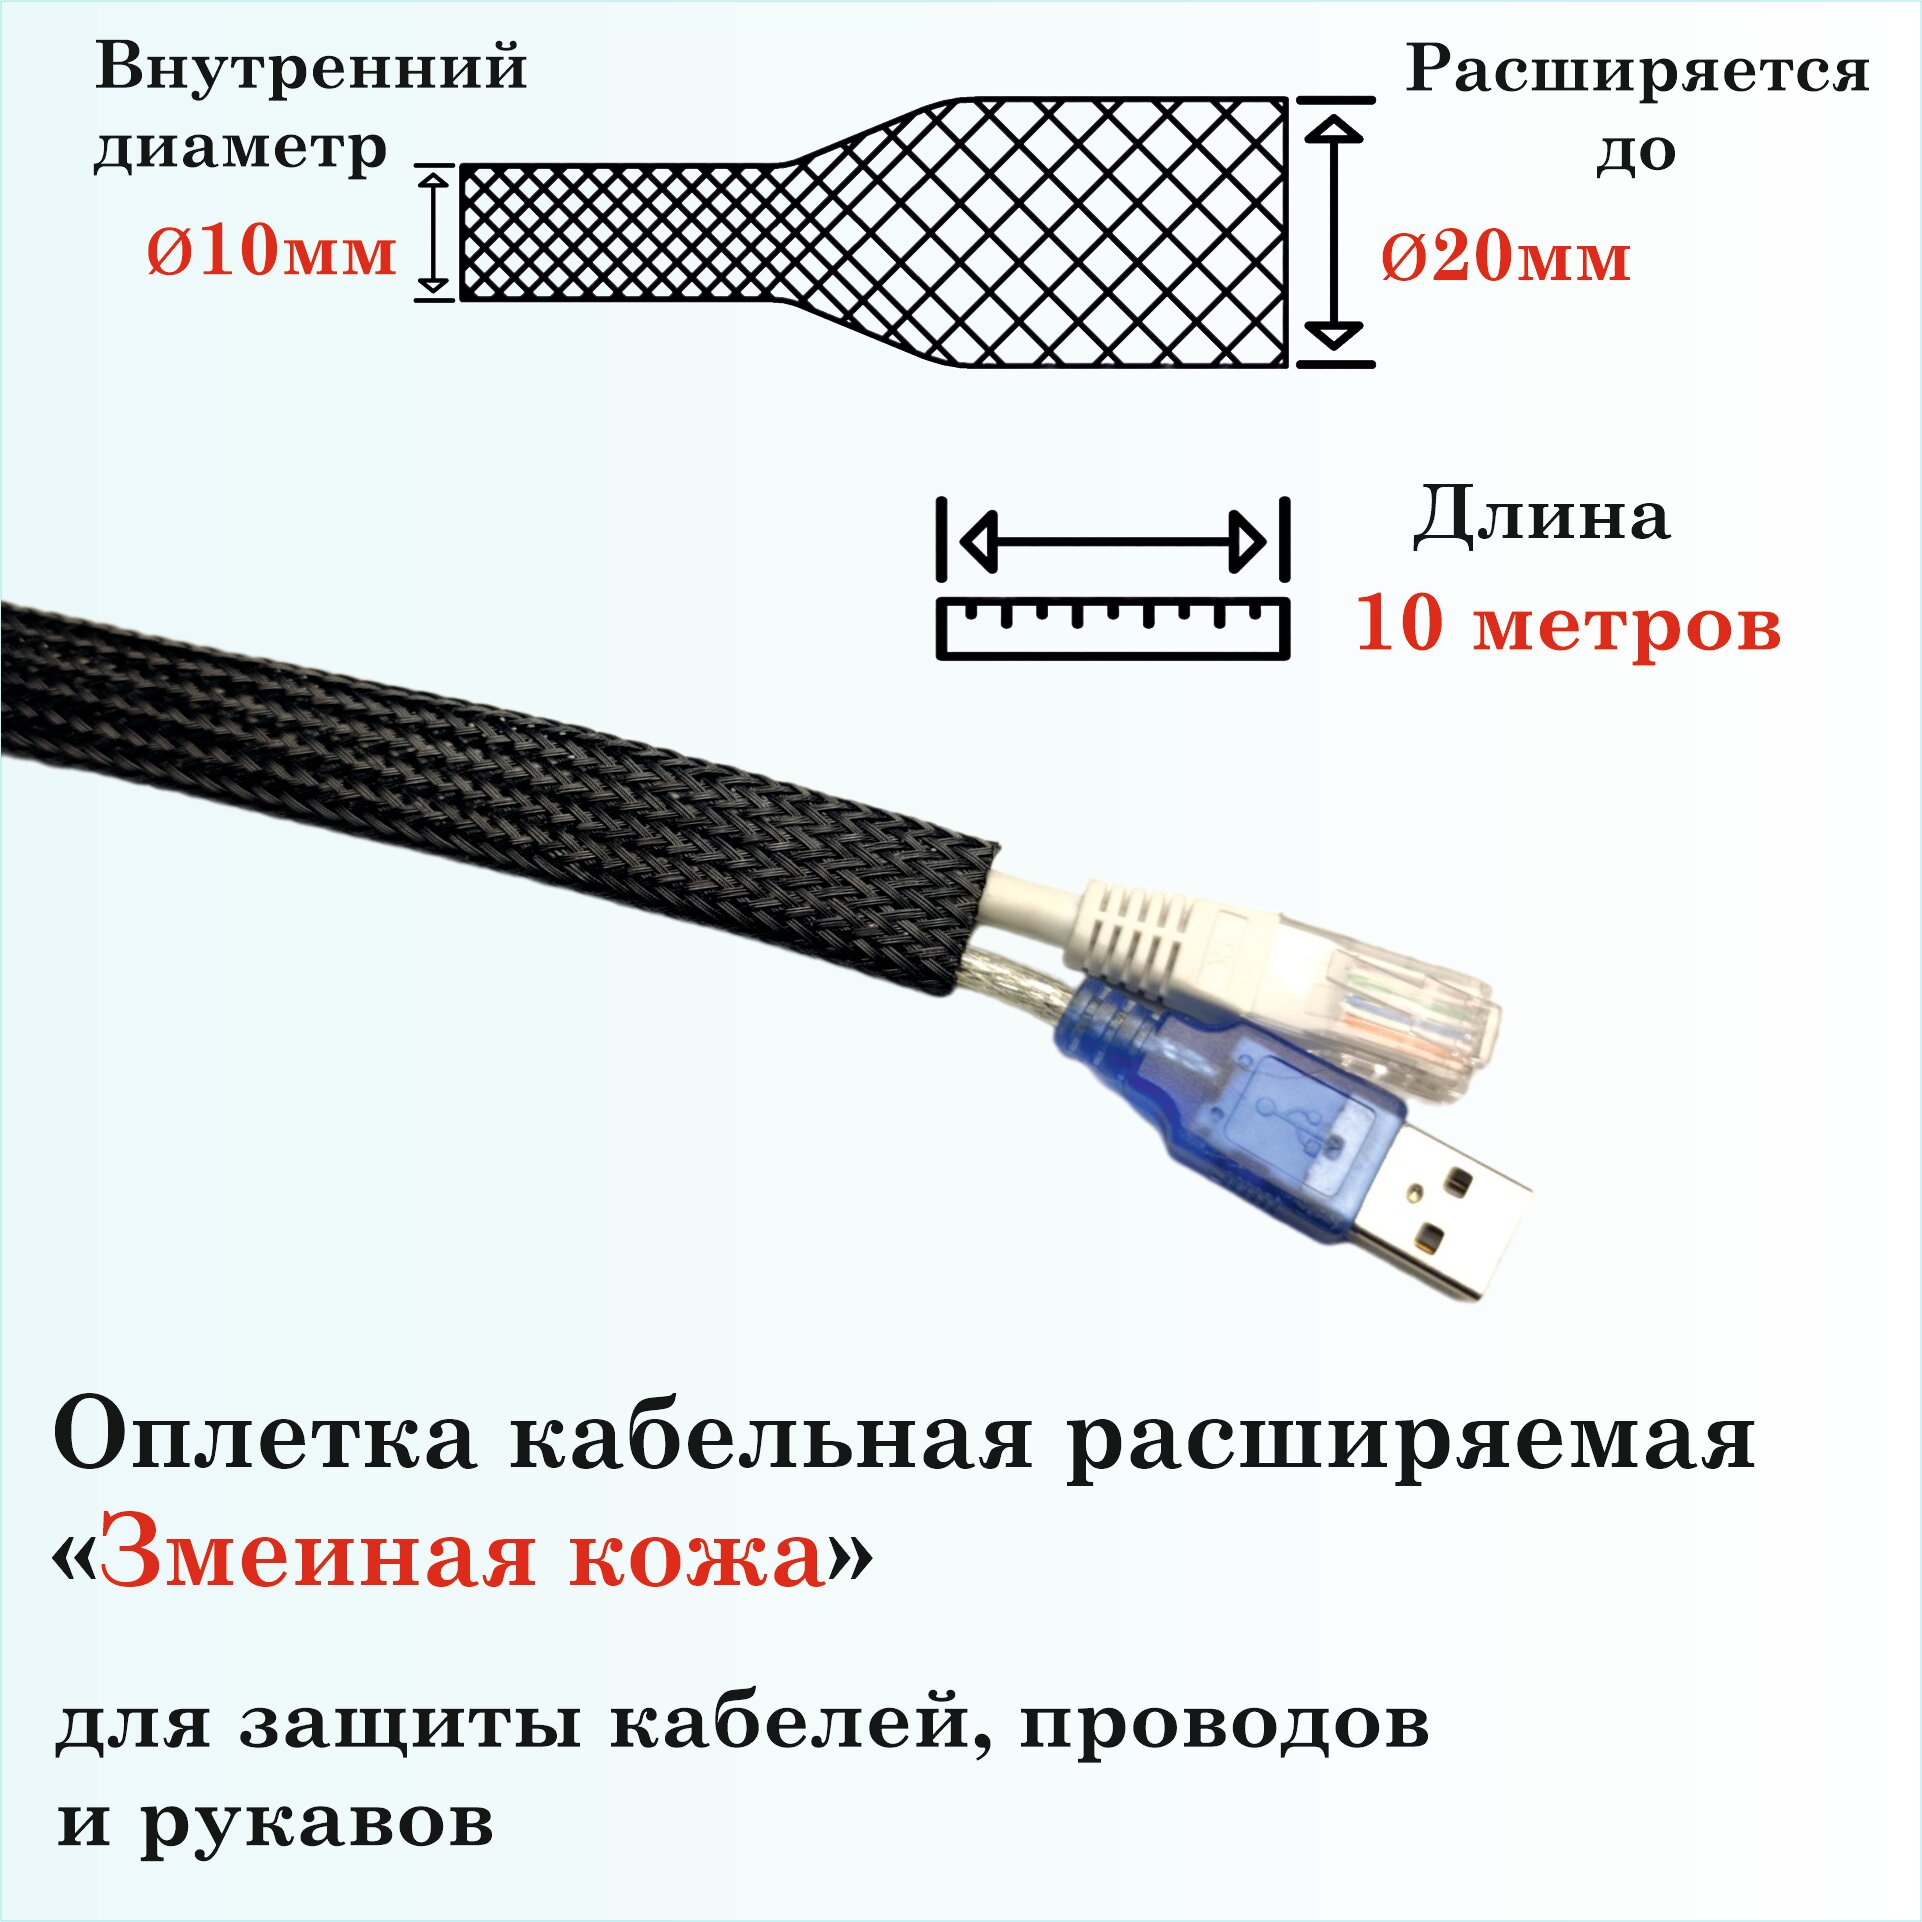 Оплетка кабельная расширяемая для защиты кабелей и проводов 